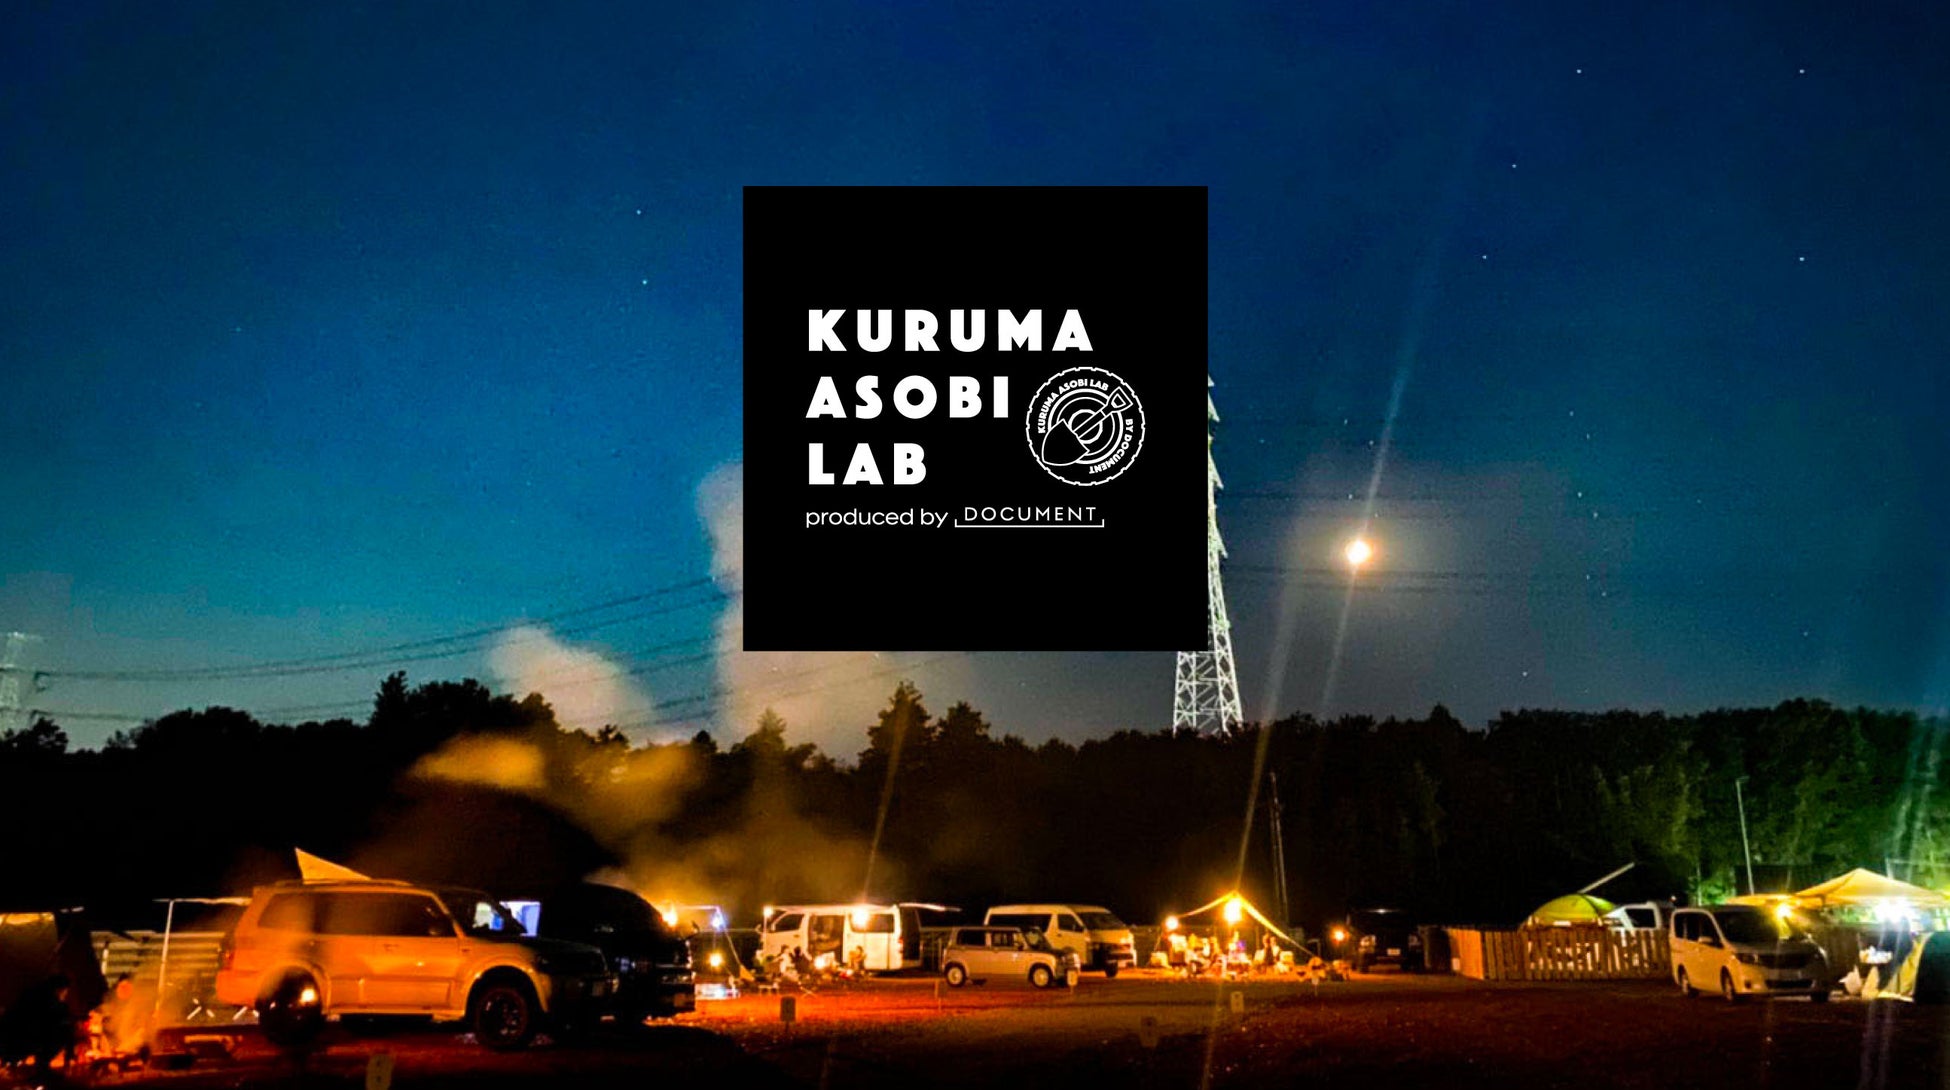 オートキャンプ場づくりに参加できる会員制コミュニティ「KURUMA ASOBI LAB」の募集が開始。